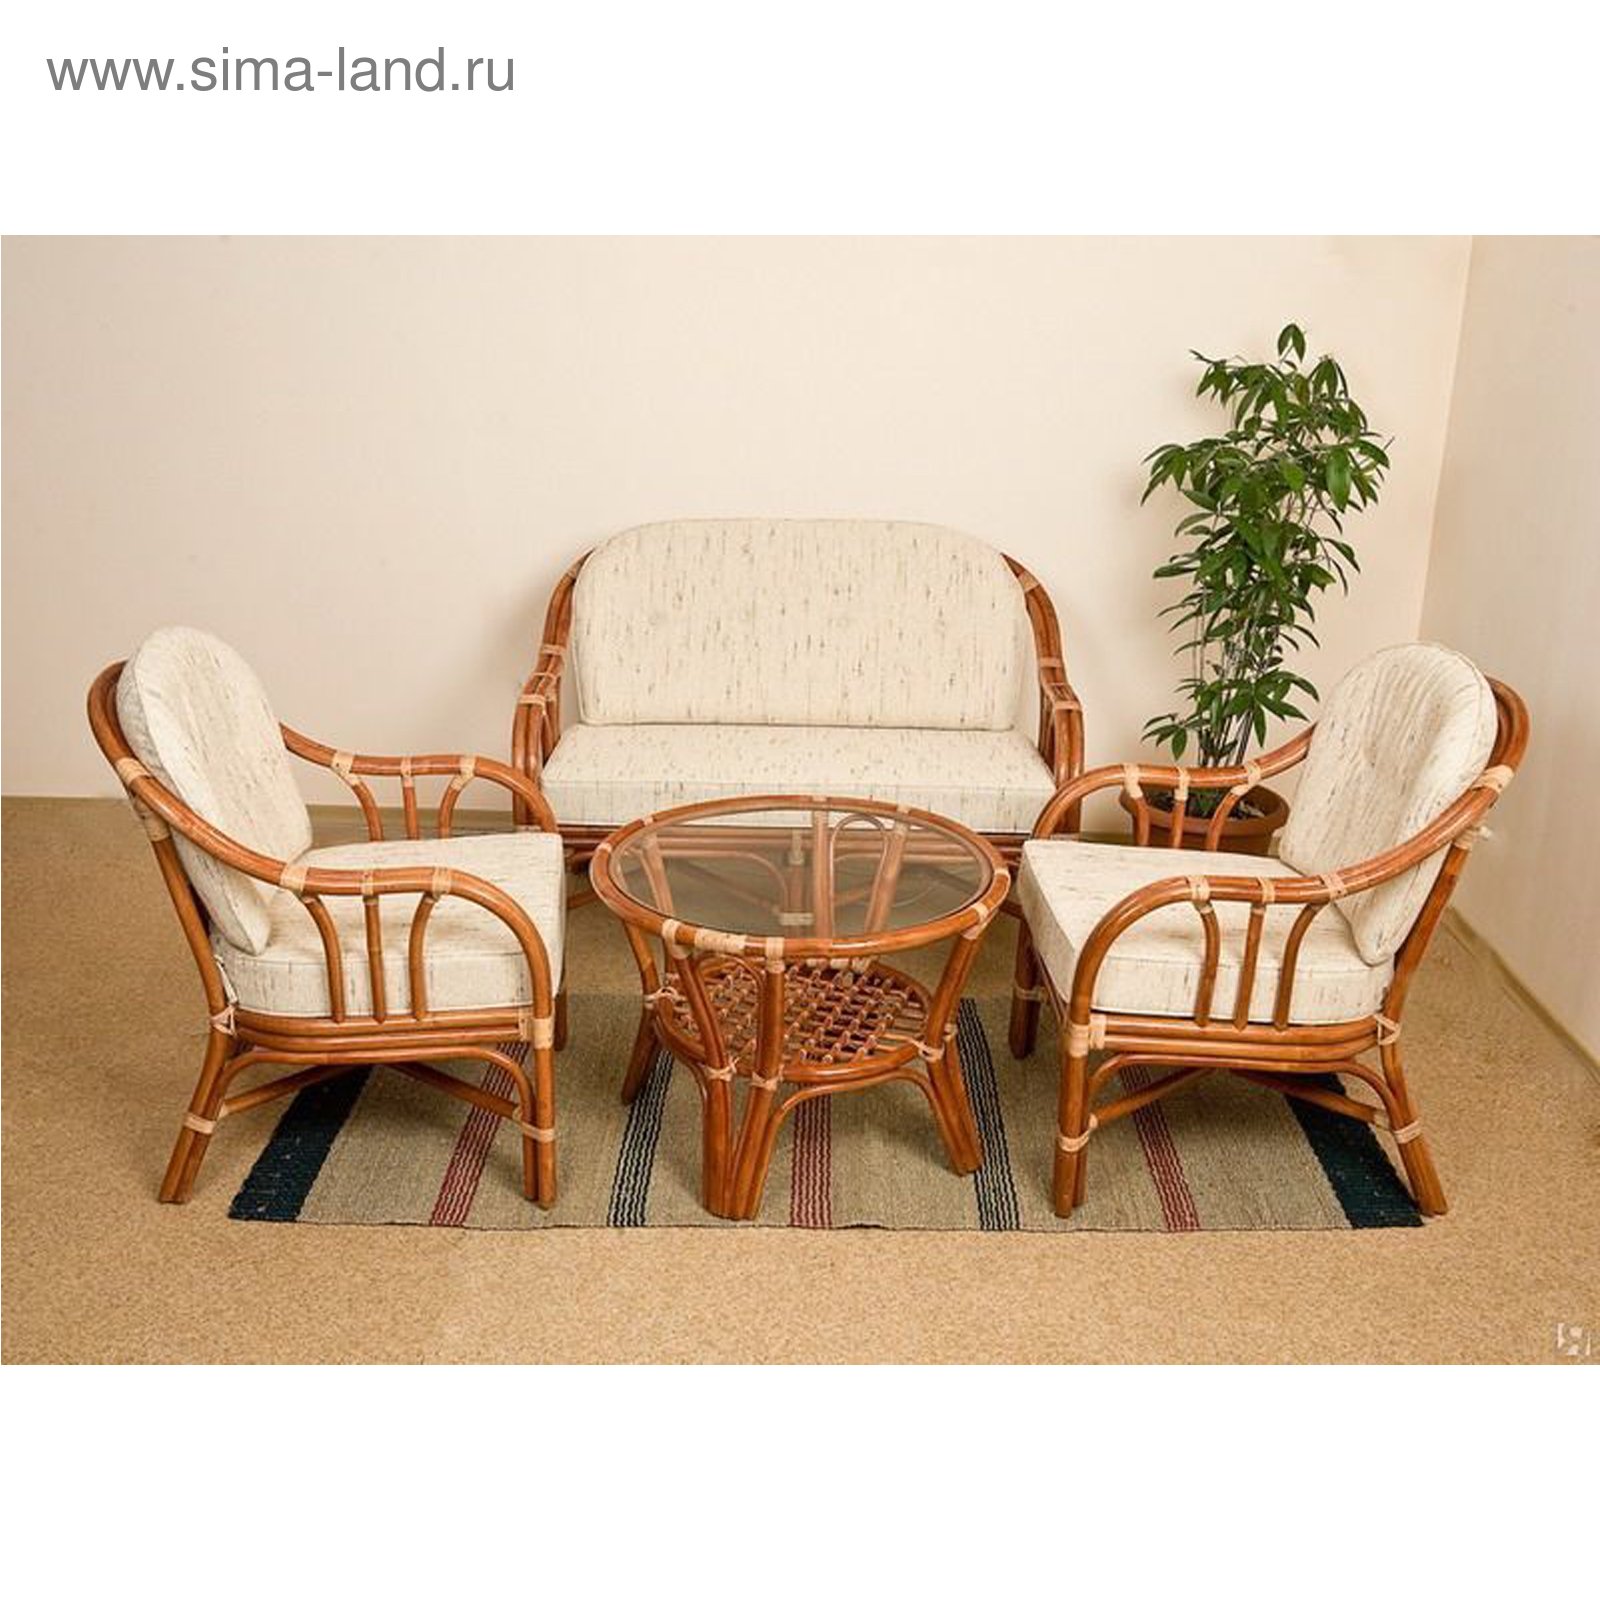 Купить кресло и столик. Мебель из ротанга Каламус. Комплект ротанговой мебели (стол, 2 кресла) frame #6 (темный) HDR-001. Calamus Rotan стул. Кресло из натурального ротанга 01\28.